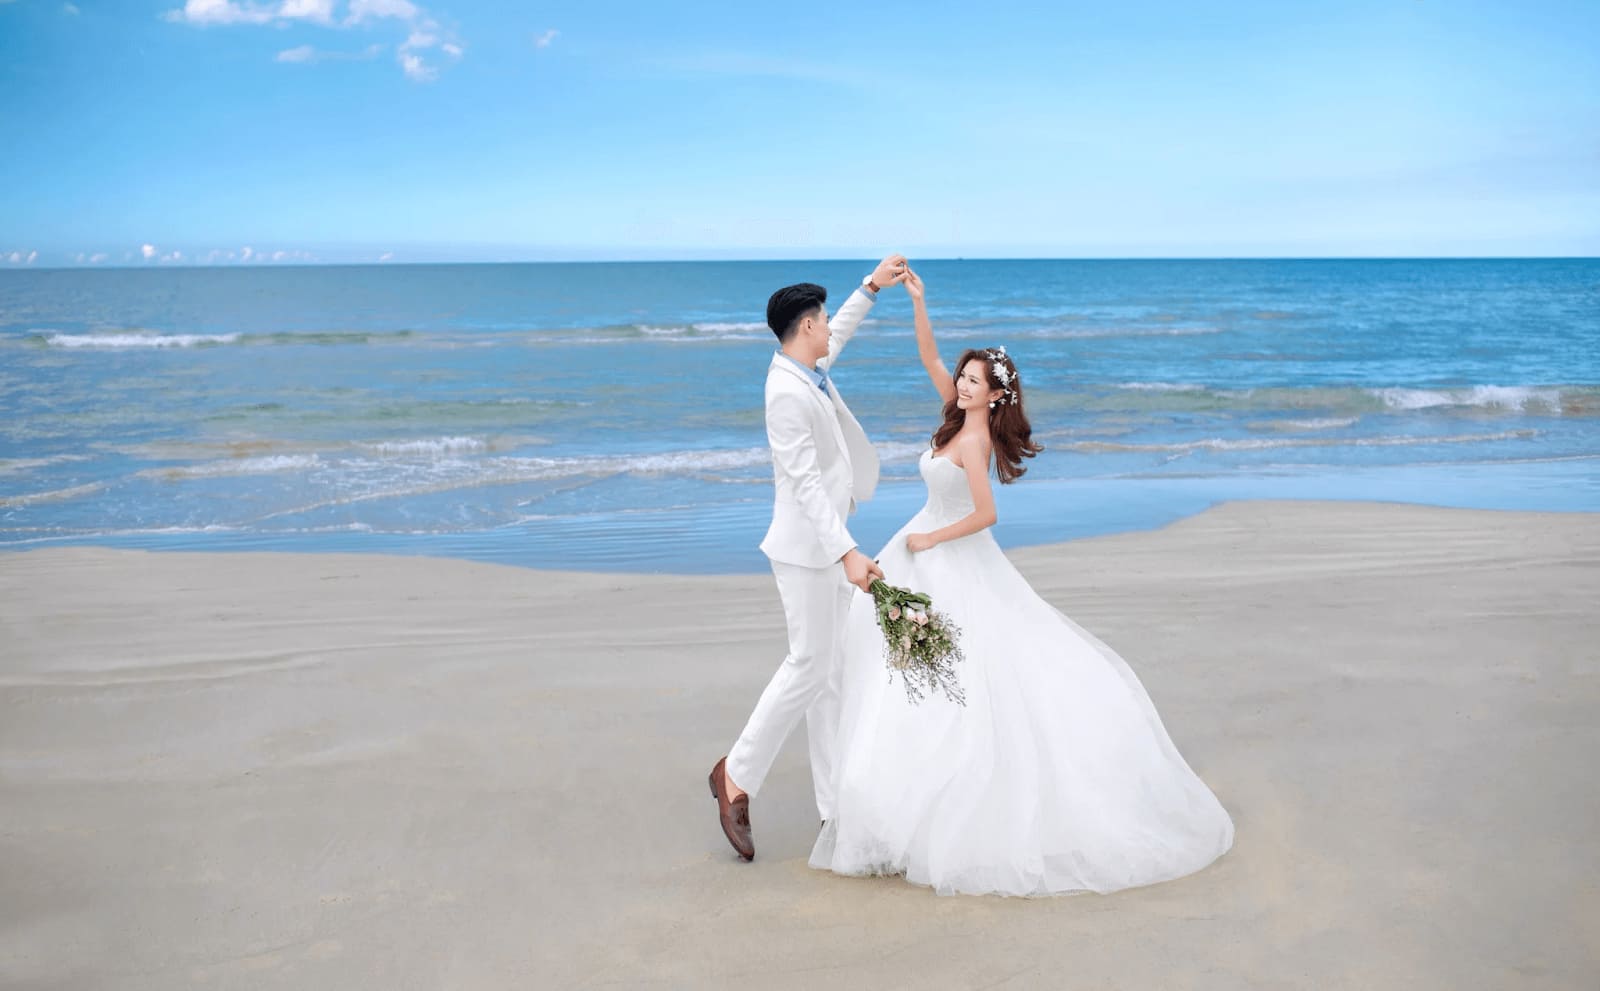 Quay phóng sự cưới Đà Nẵng